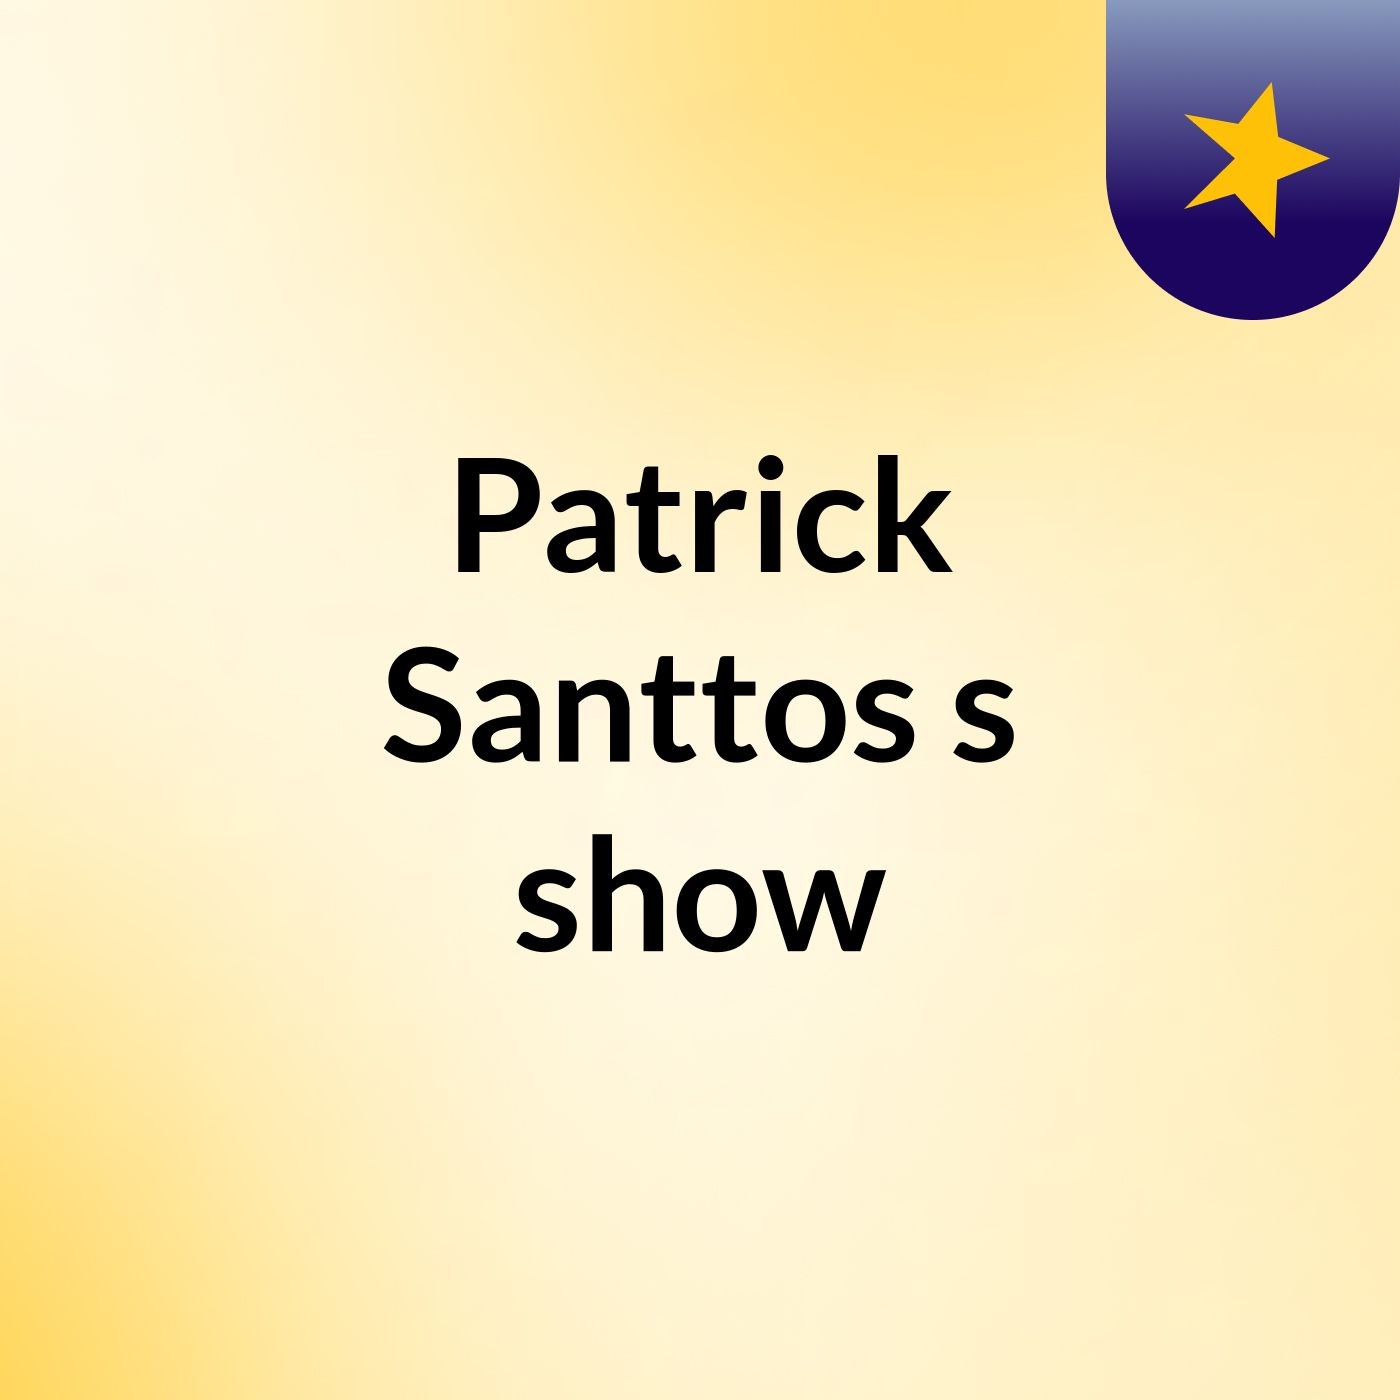 Patrick Santtos's show